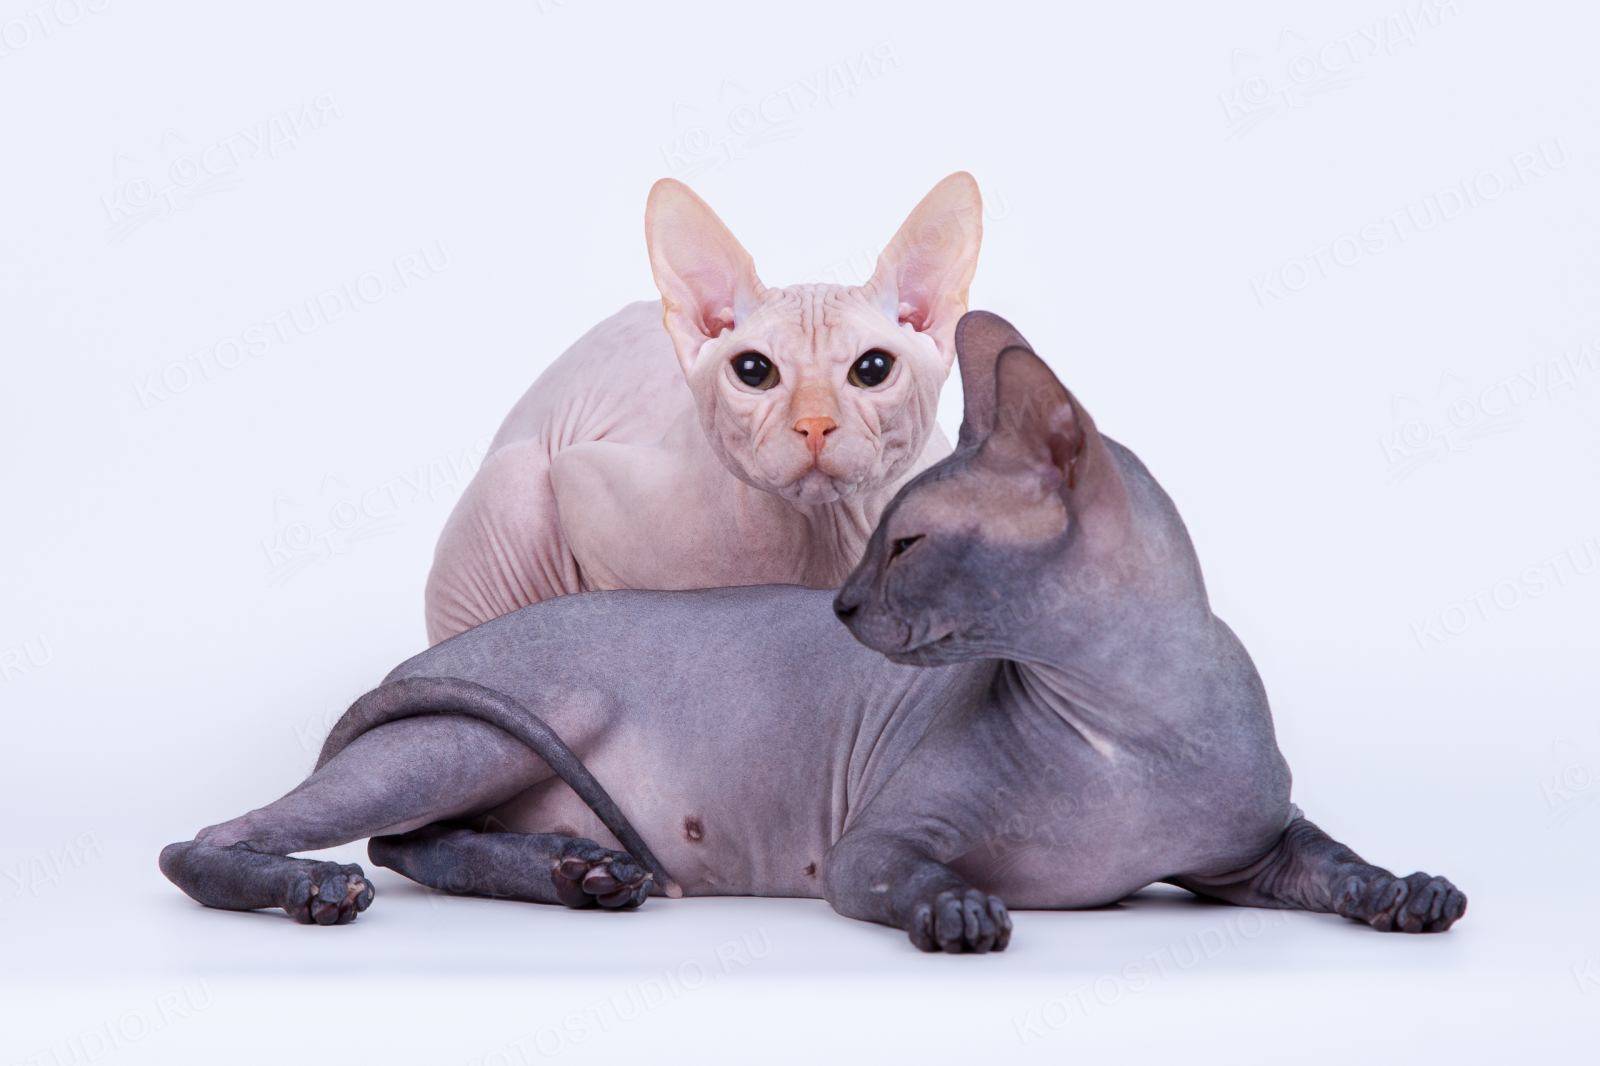 Кот сфинкс: происхождение породы и подвиды